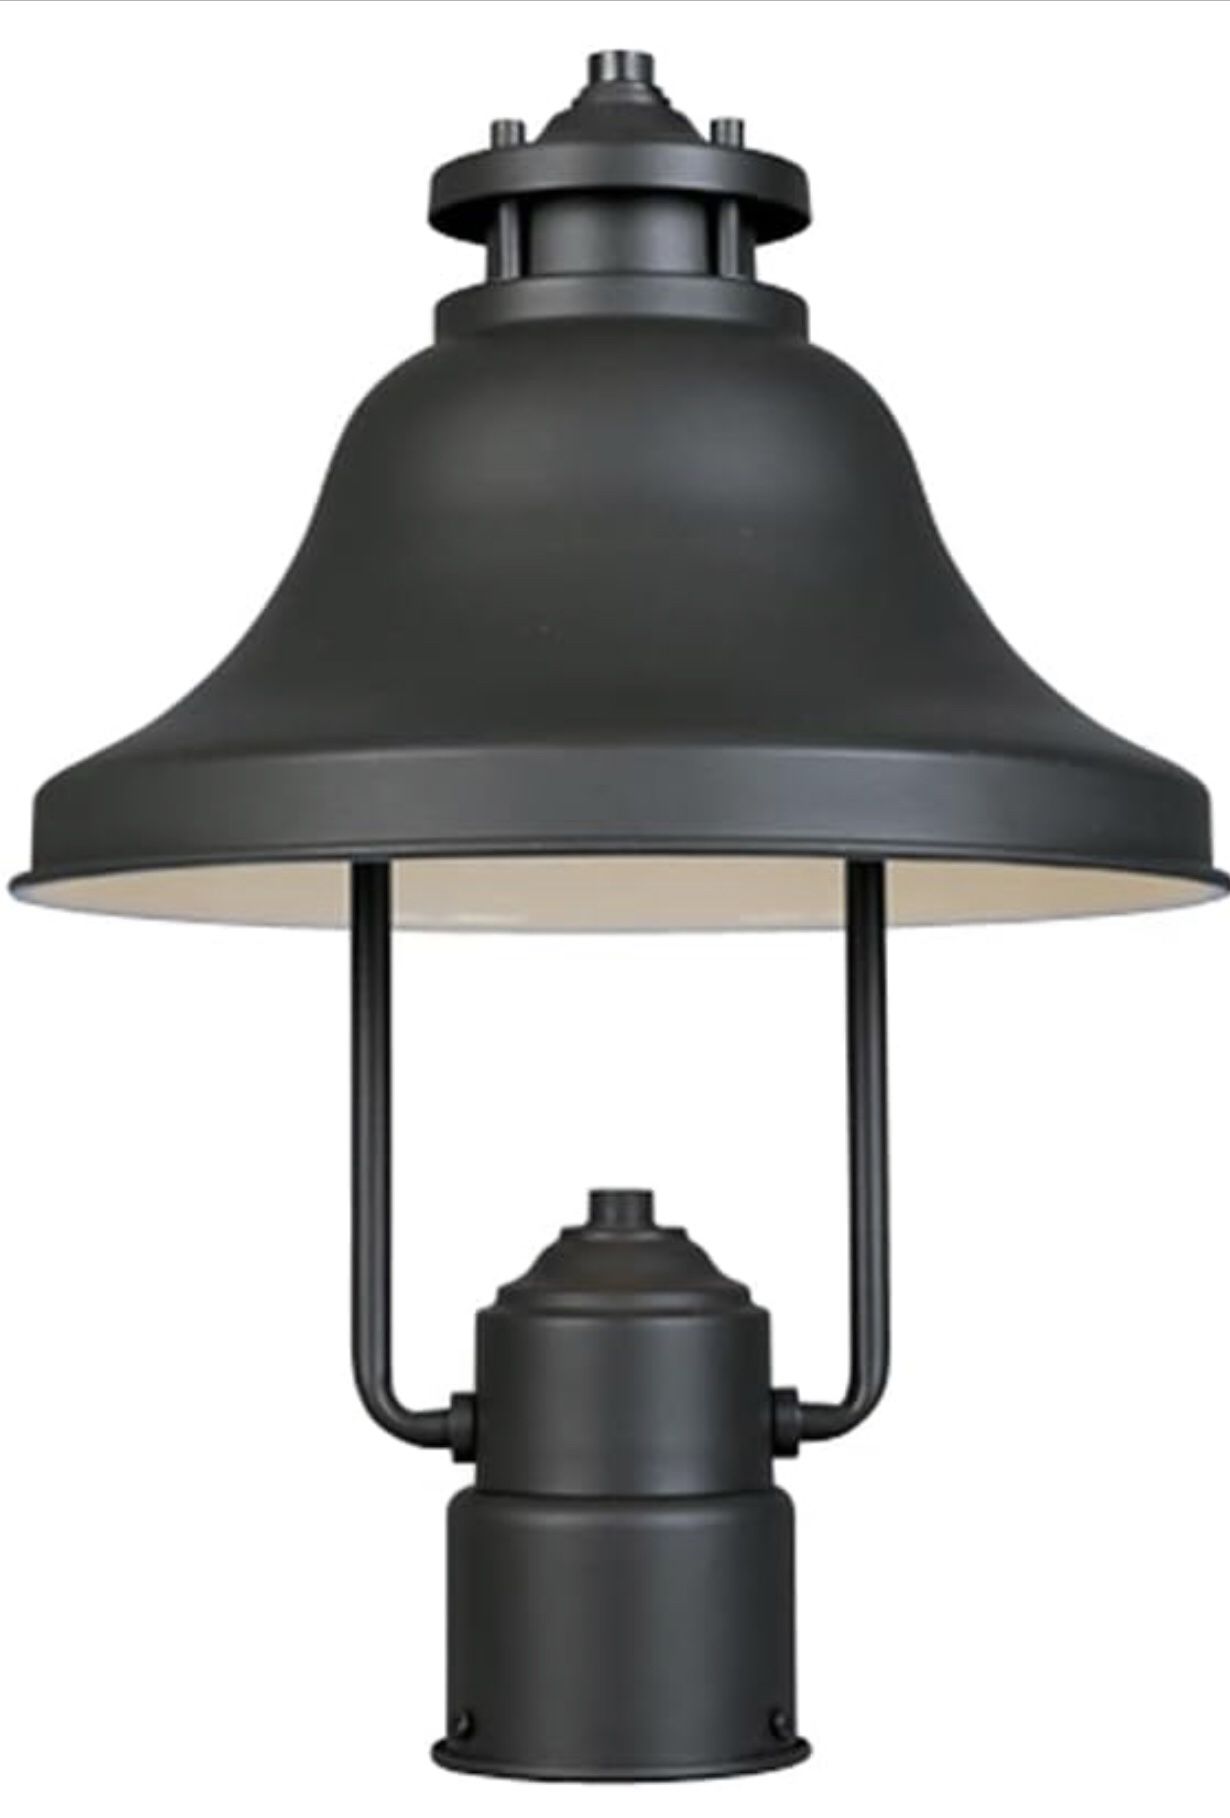 NEW! Designers Fountain Bayport-DS Post Lantern, Bronze 15.25in Height (31336-BZ)